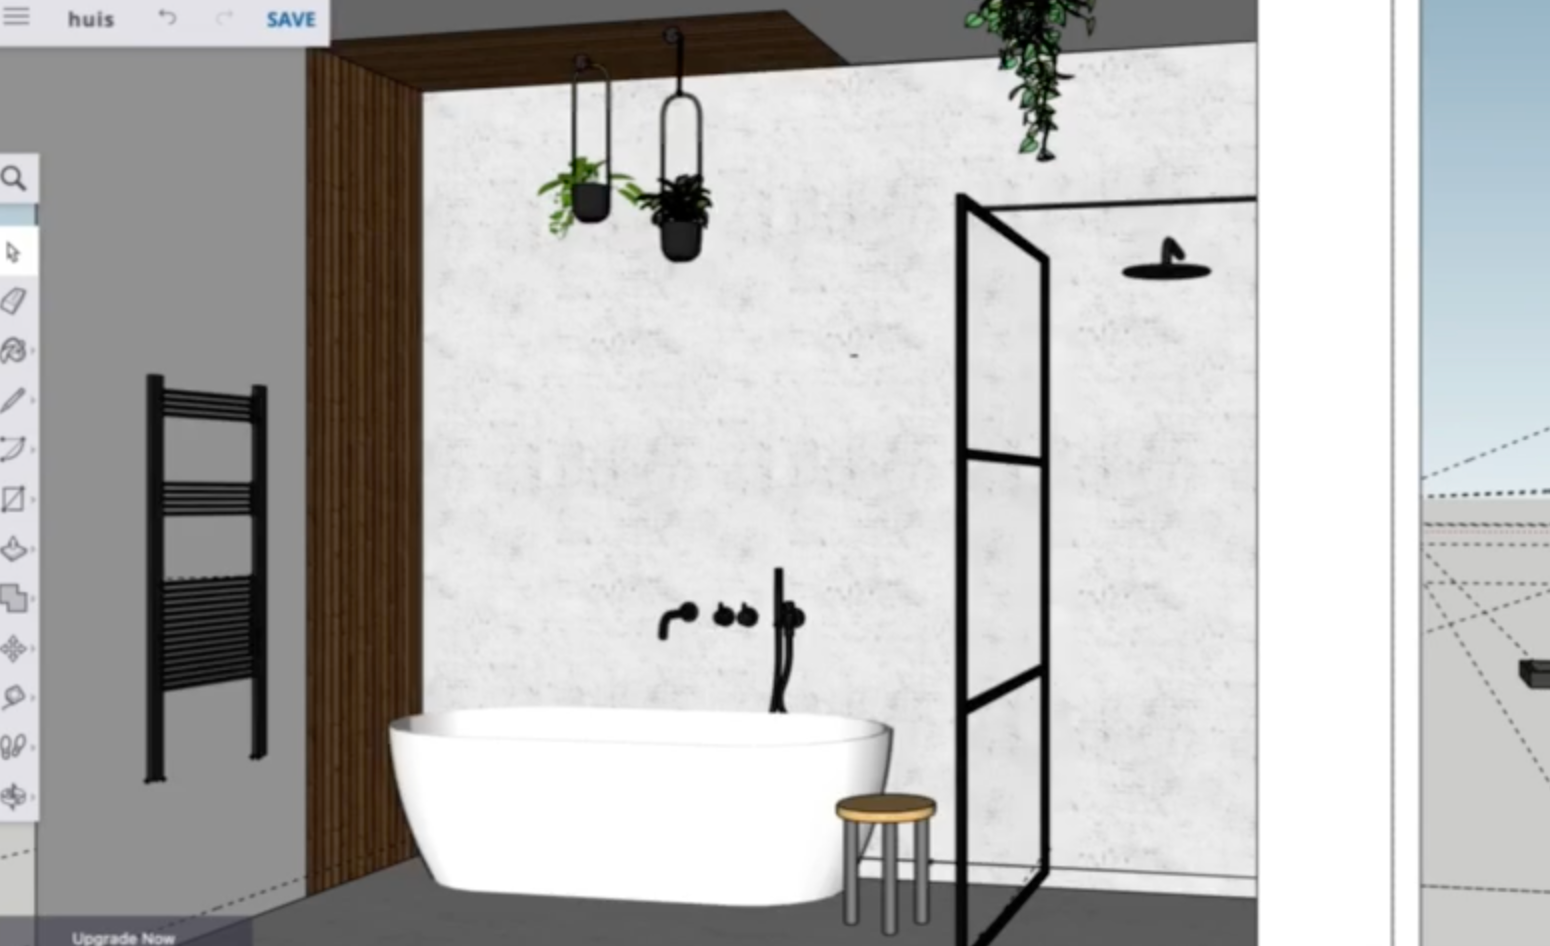 Bepalen Kaal golf De 5 handigste programma's om je badkamer online te ontwerpen - Makeover.nl